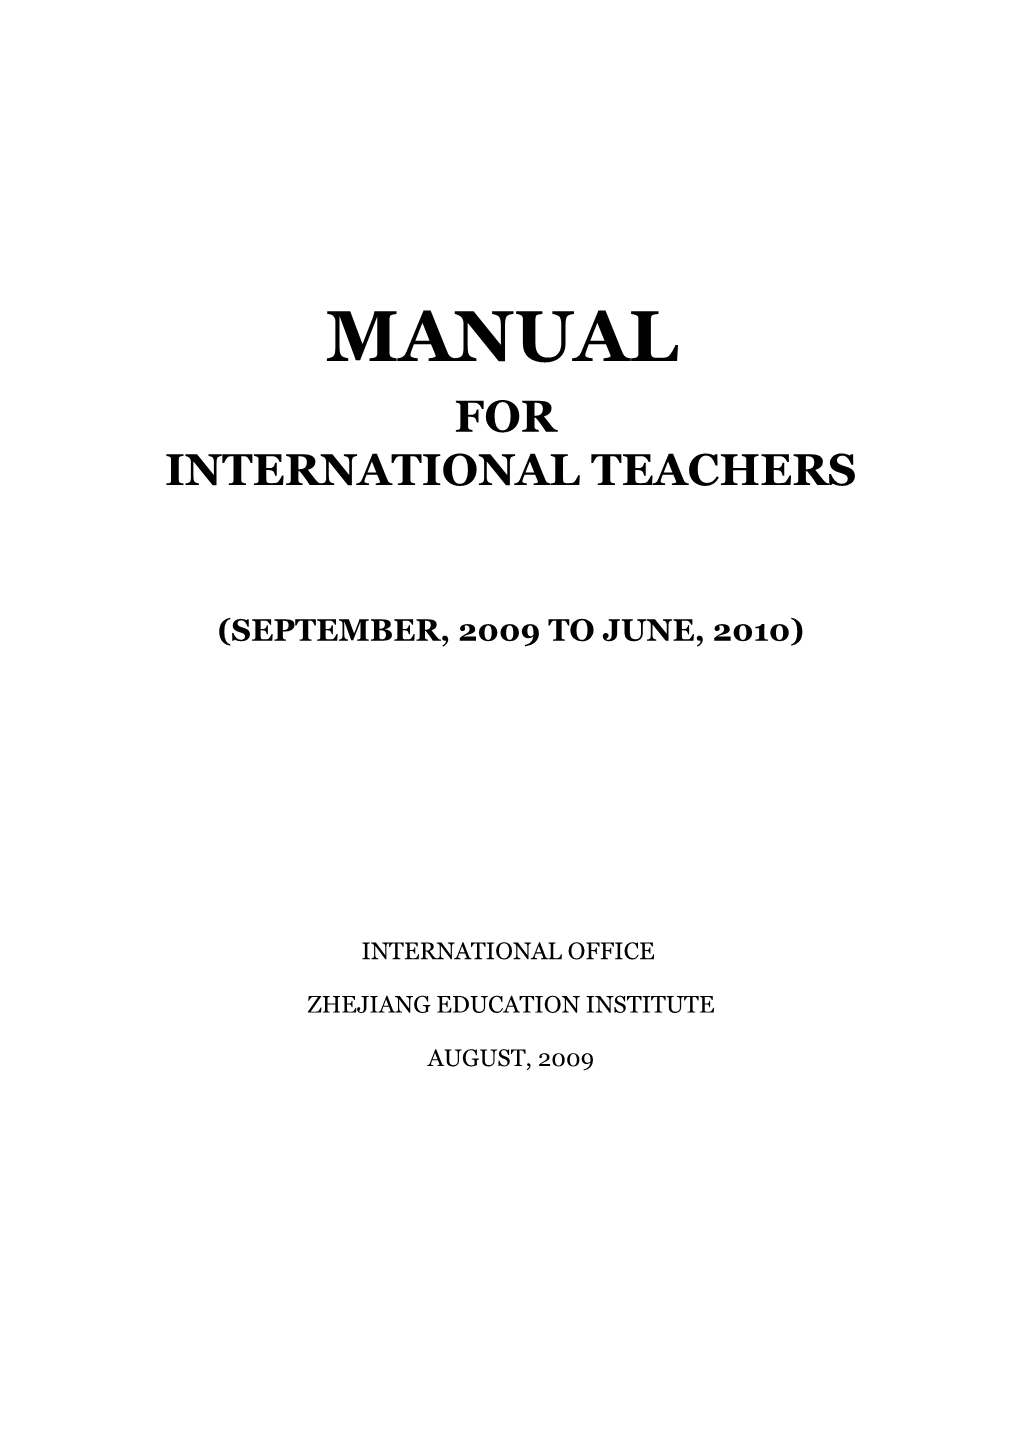 International Teachers